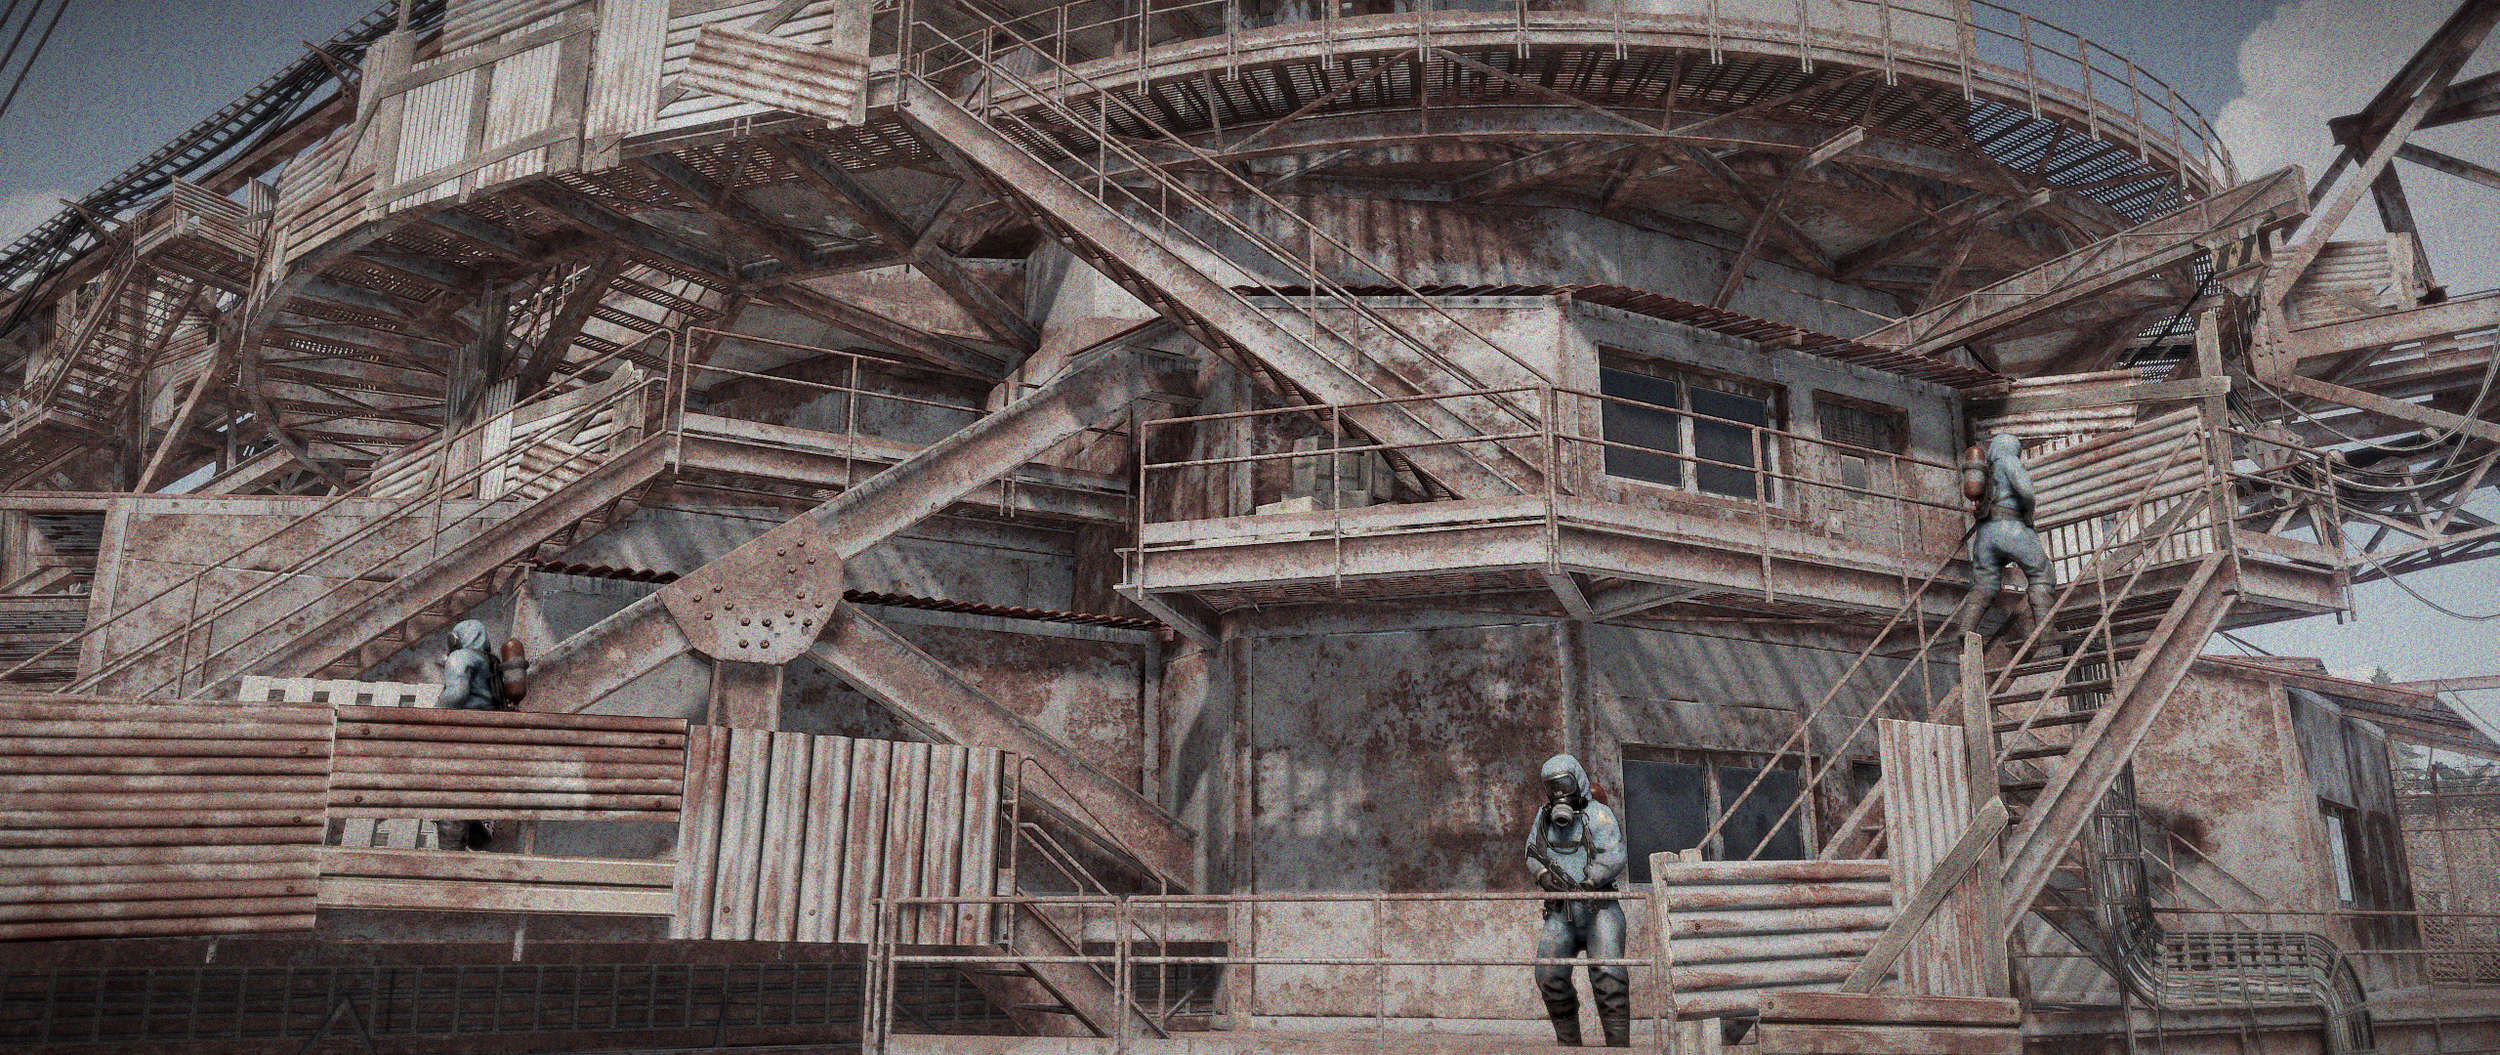 Rust гигантский экскаватор фото 40